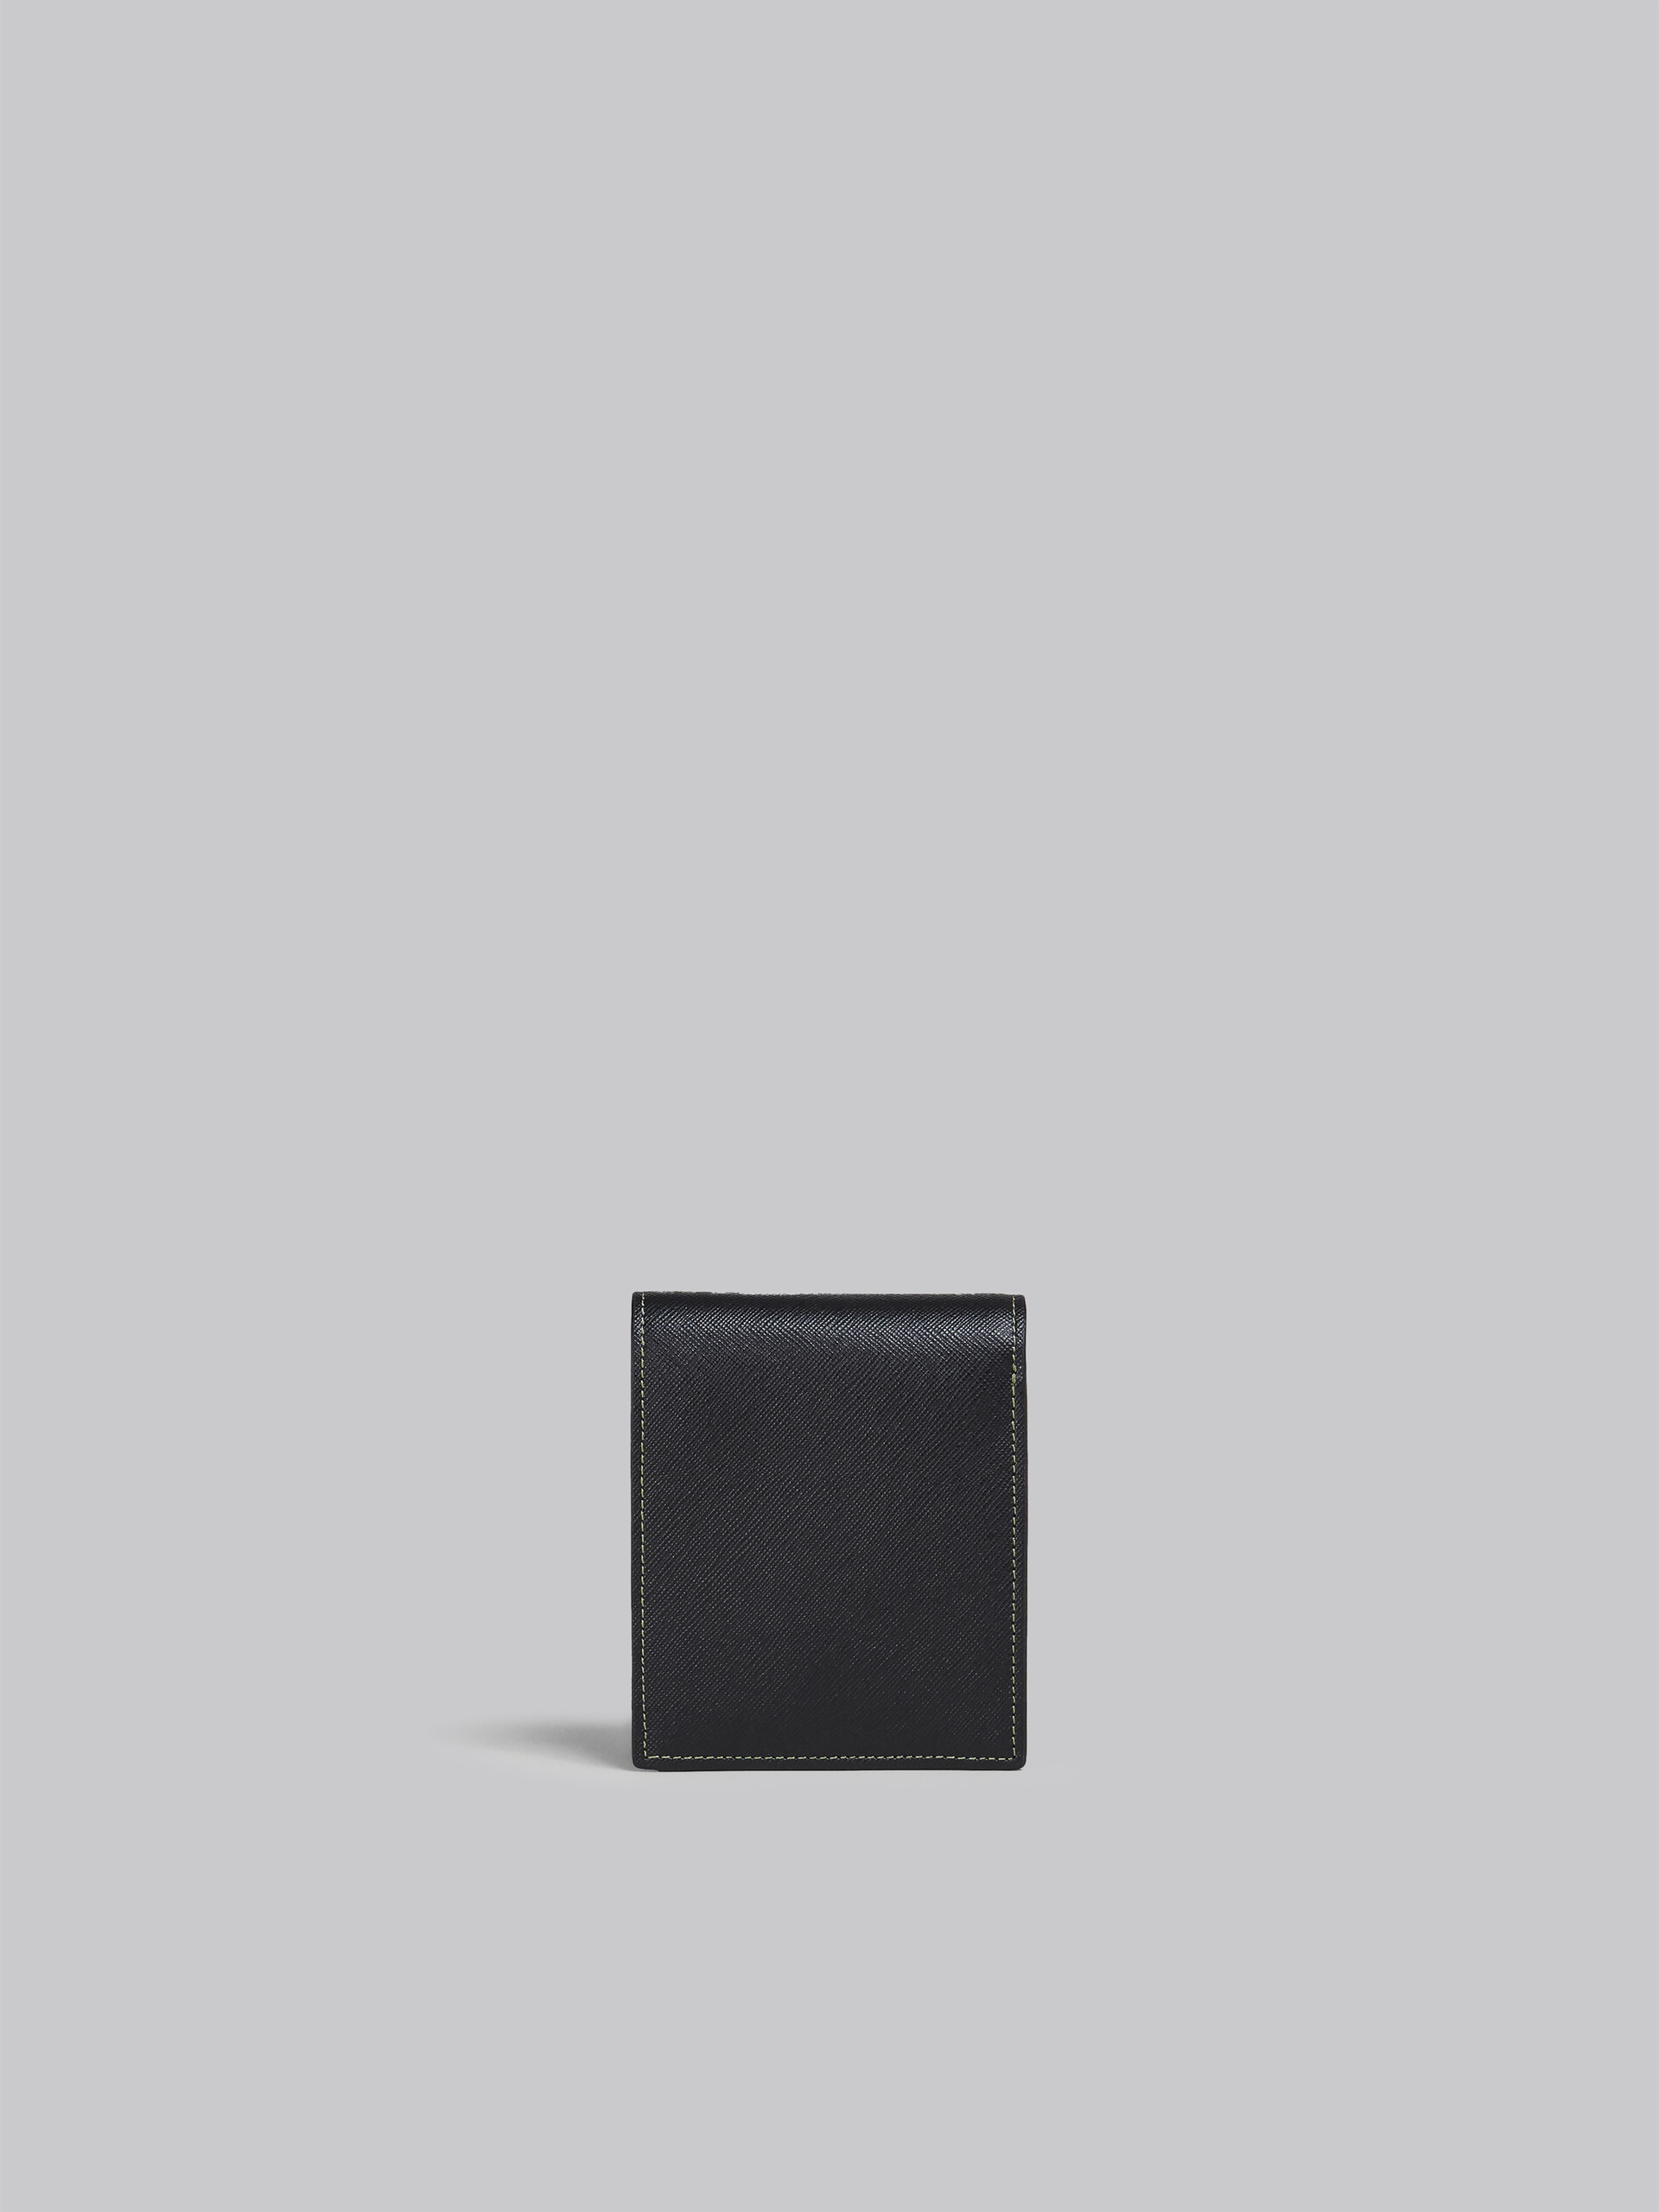 Portafoglio bi-fold in saffiano nero verde e blu - Portafogli - Image 3